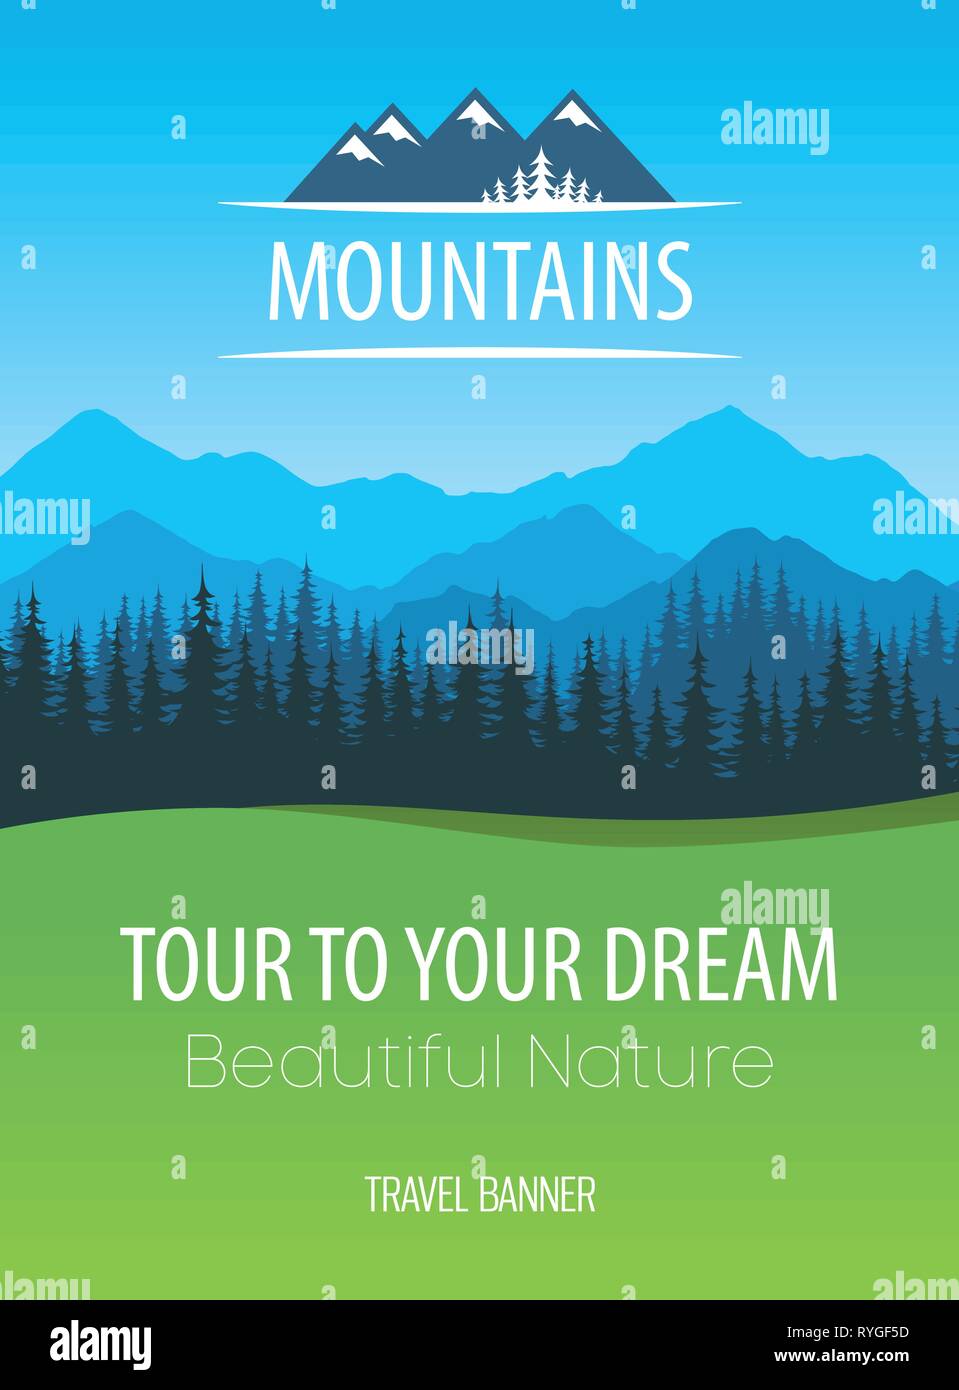 Montagnes Nature, vector Travel Poster - Conception des Alpes de nature colorée pittoresque Illustration de Vecteur